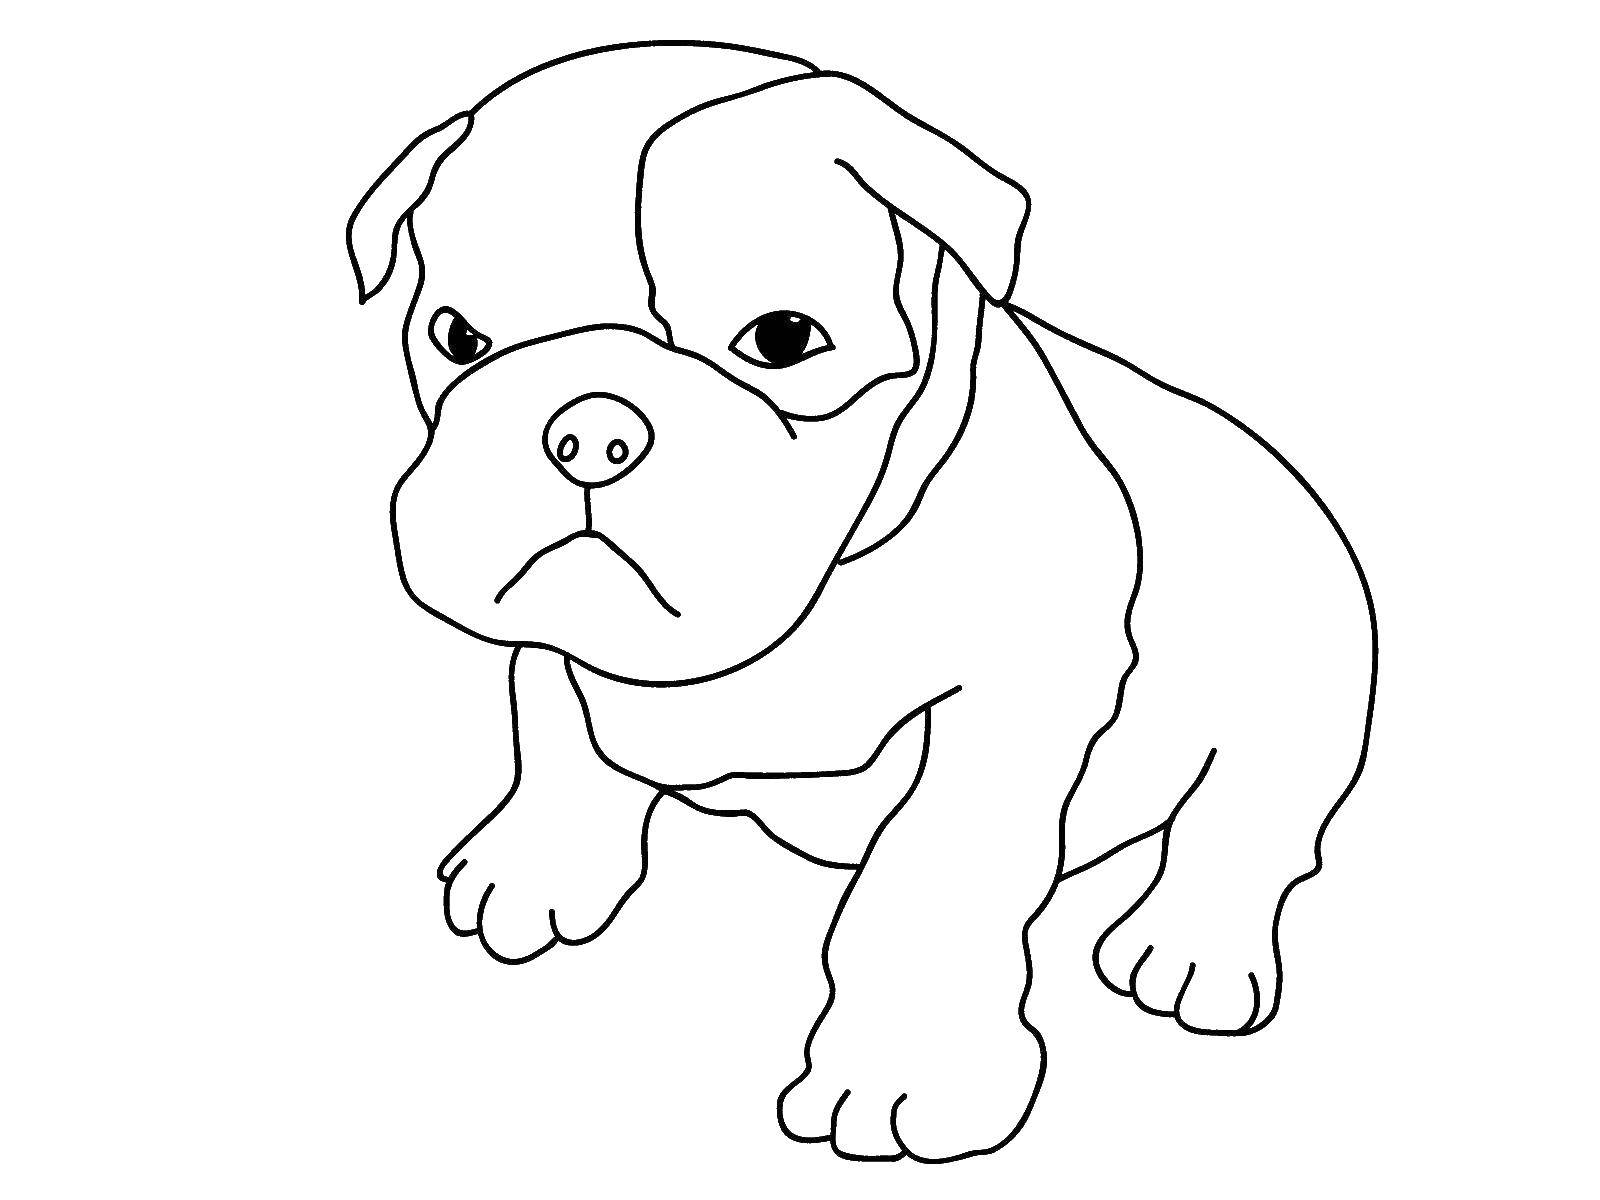 Coloring Bulldog. Category Pets allowed. Tags:  animals, dog, dog, bulldog.